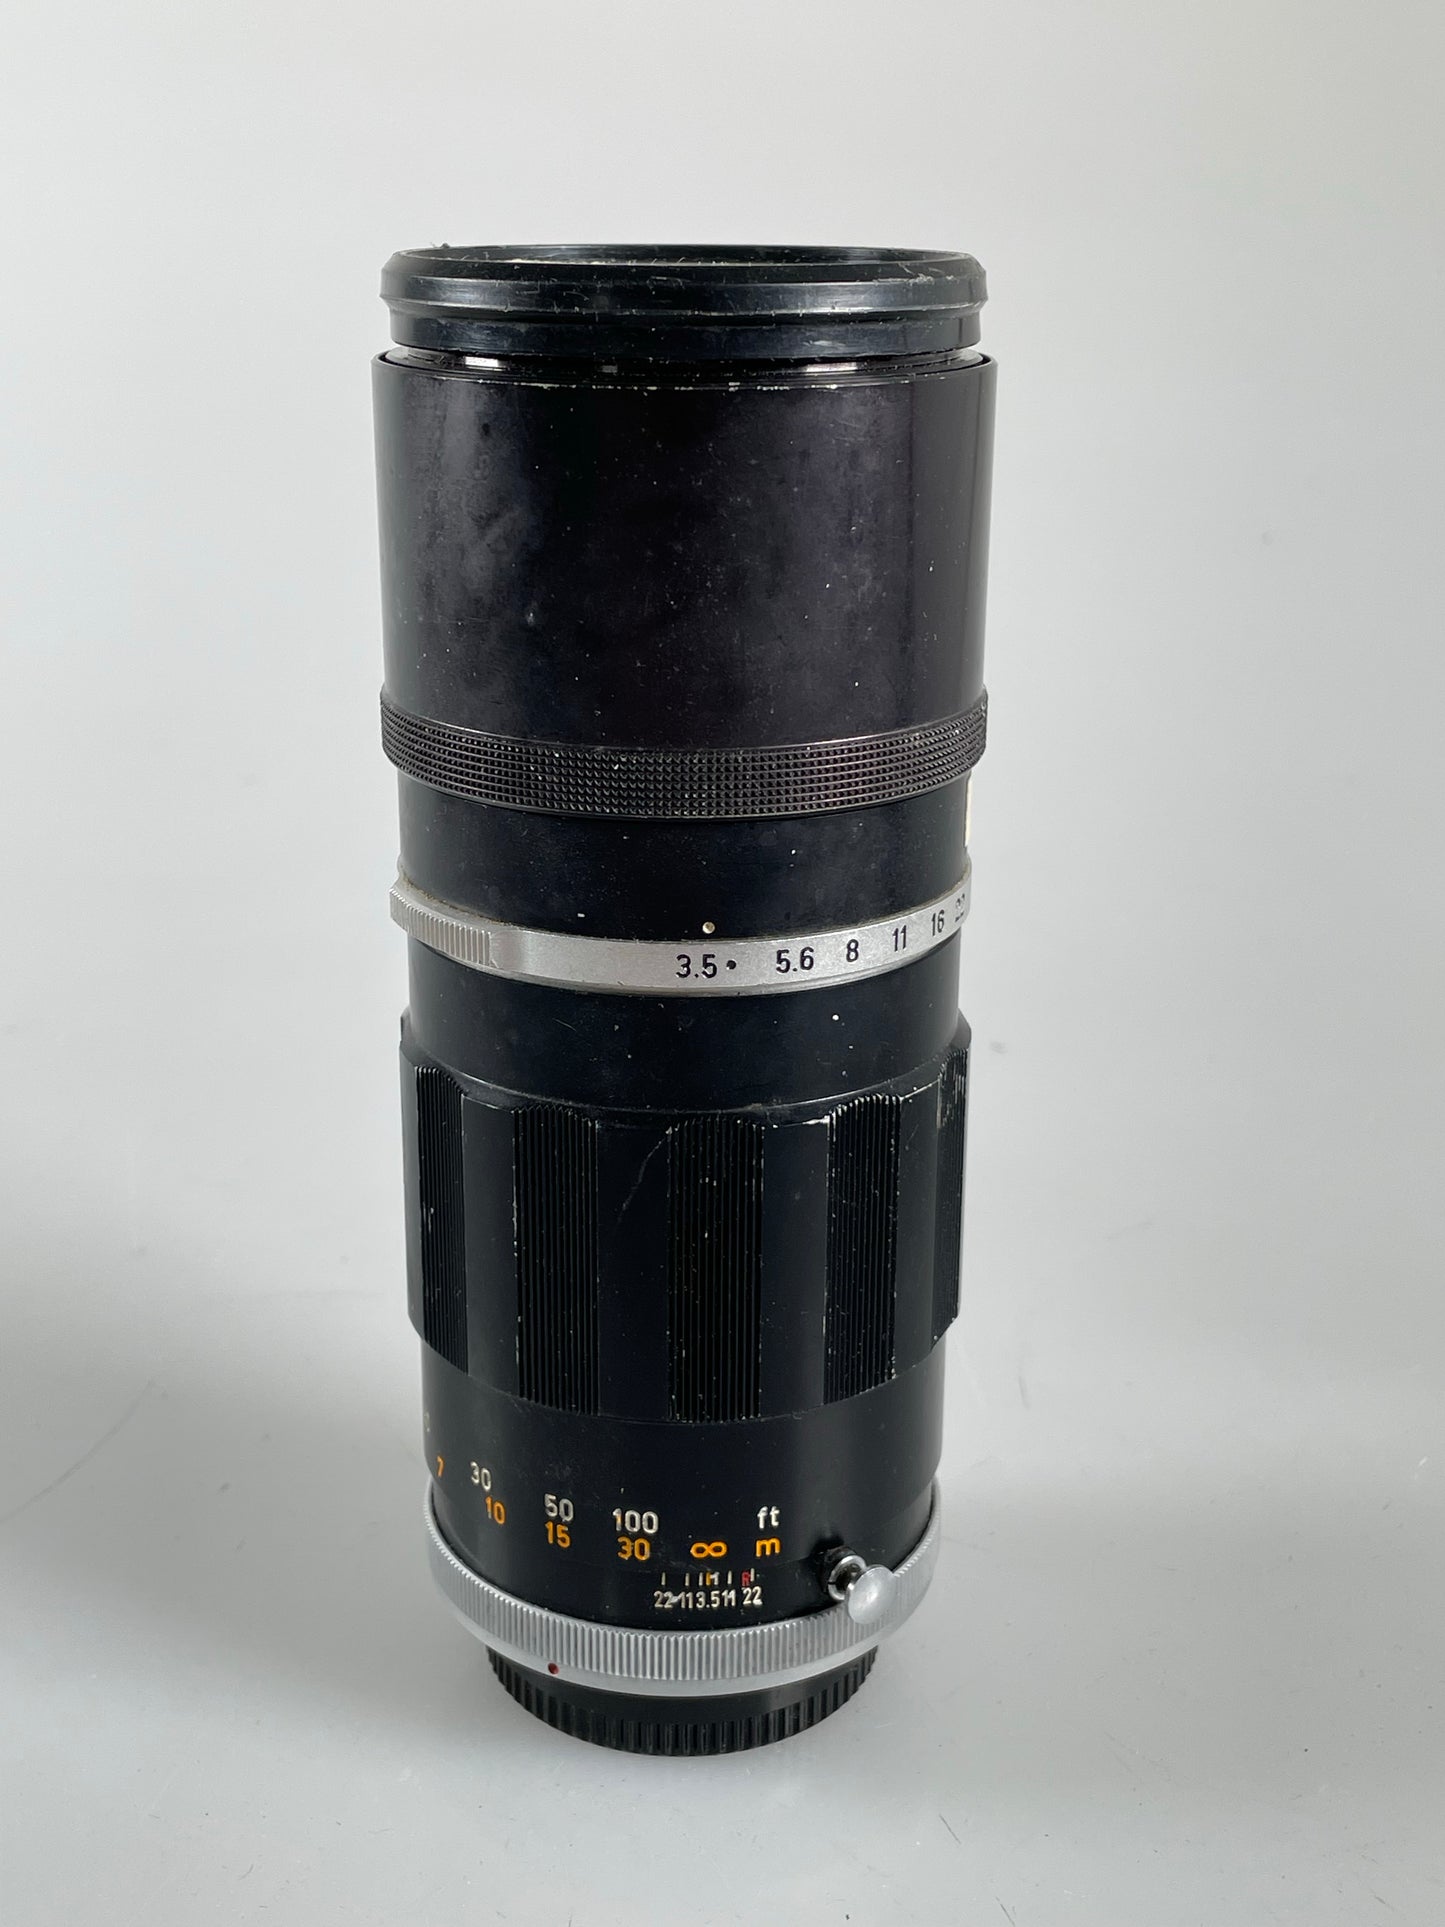 Canon FL 200mm f3.5 Lens manual focus